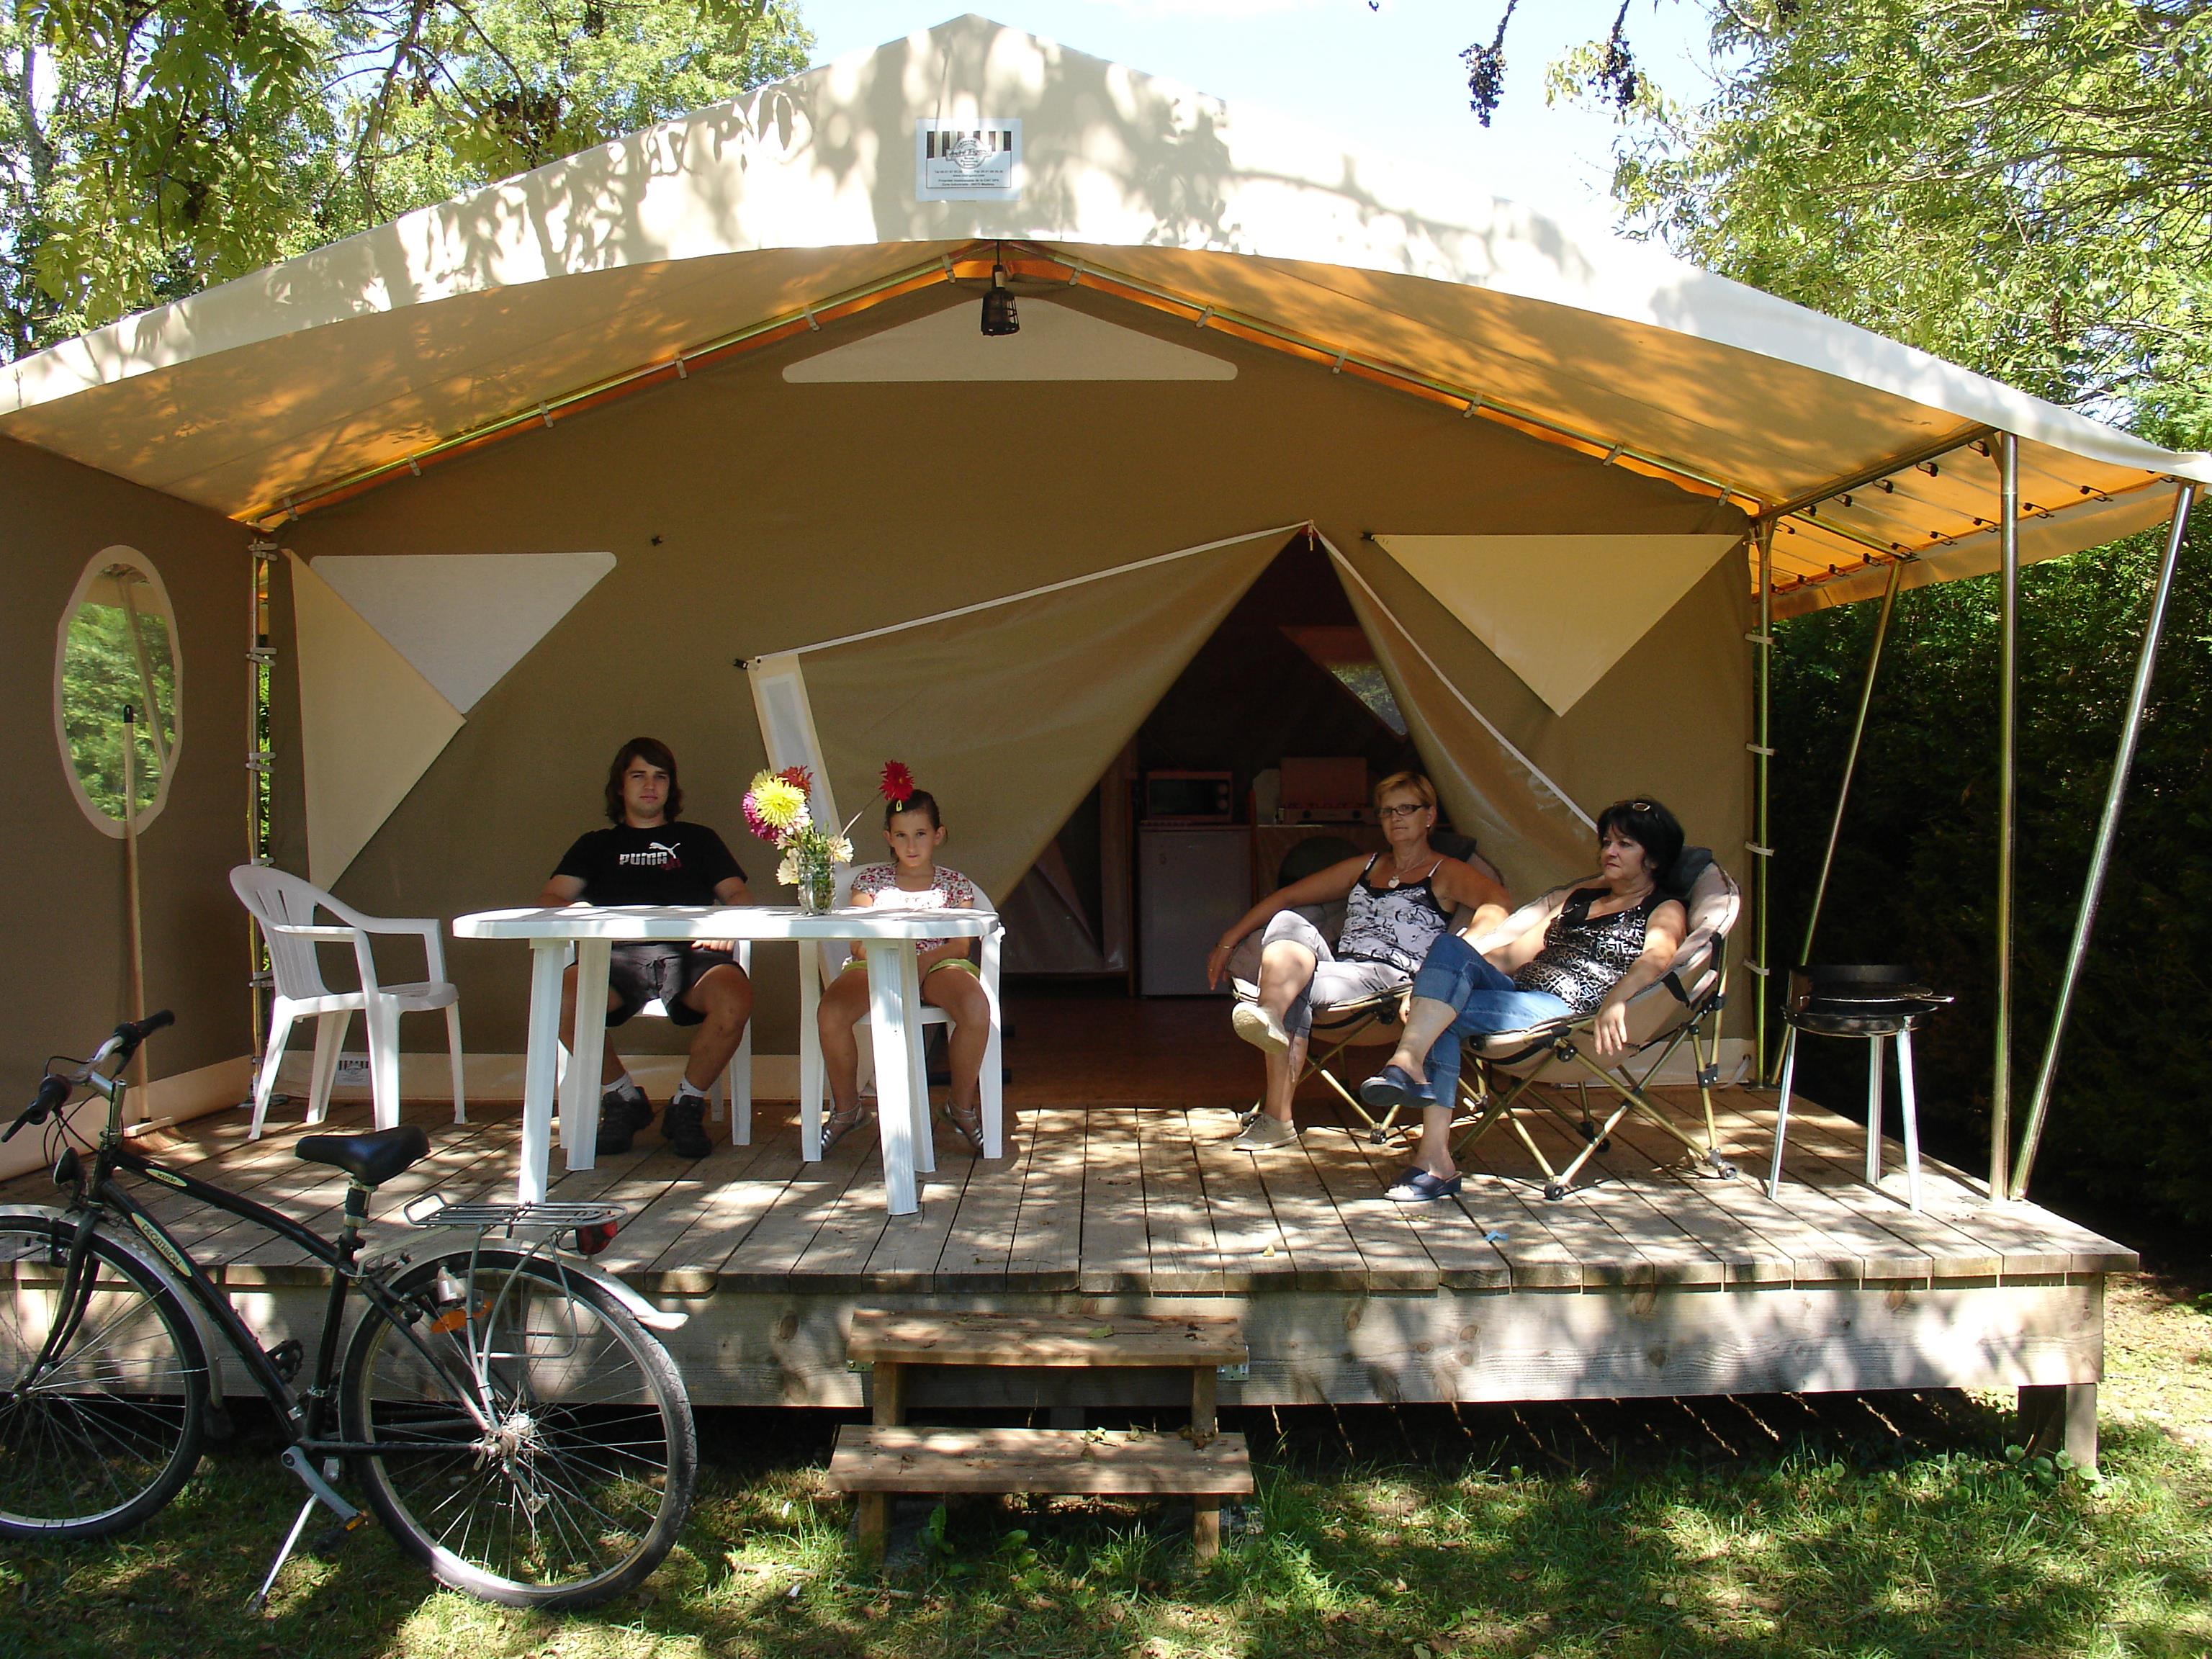 Tenda Lodge Trappeur Standard - 32m² (2 Camere) - veranda coperta - senza sanitari